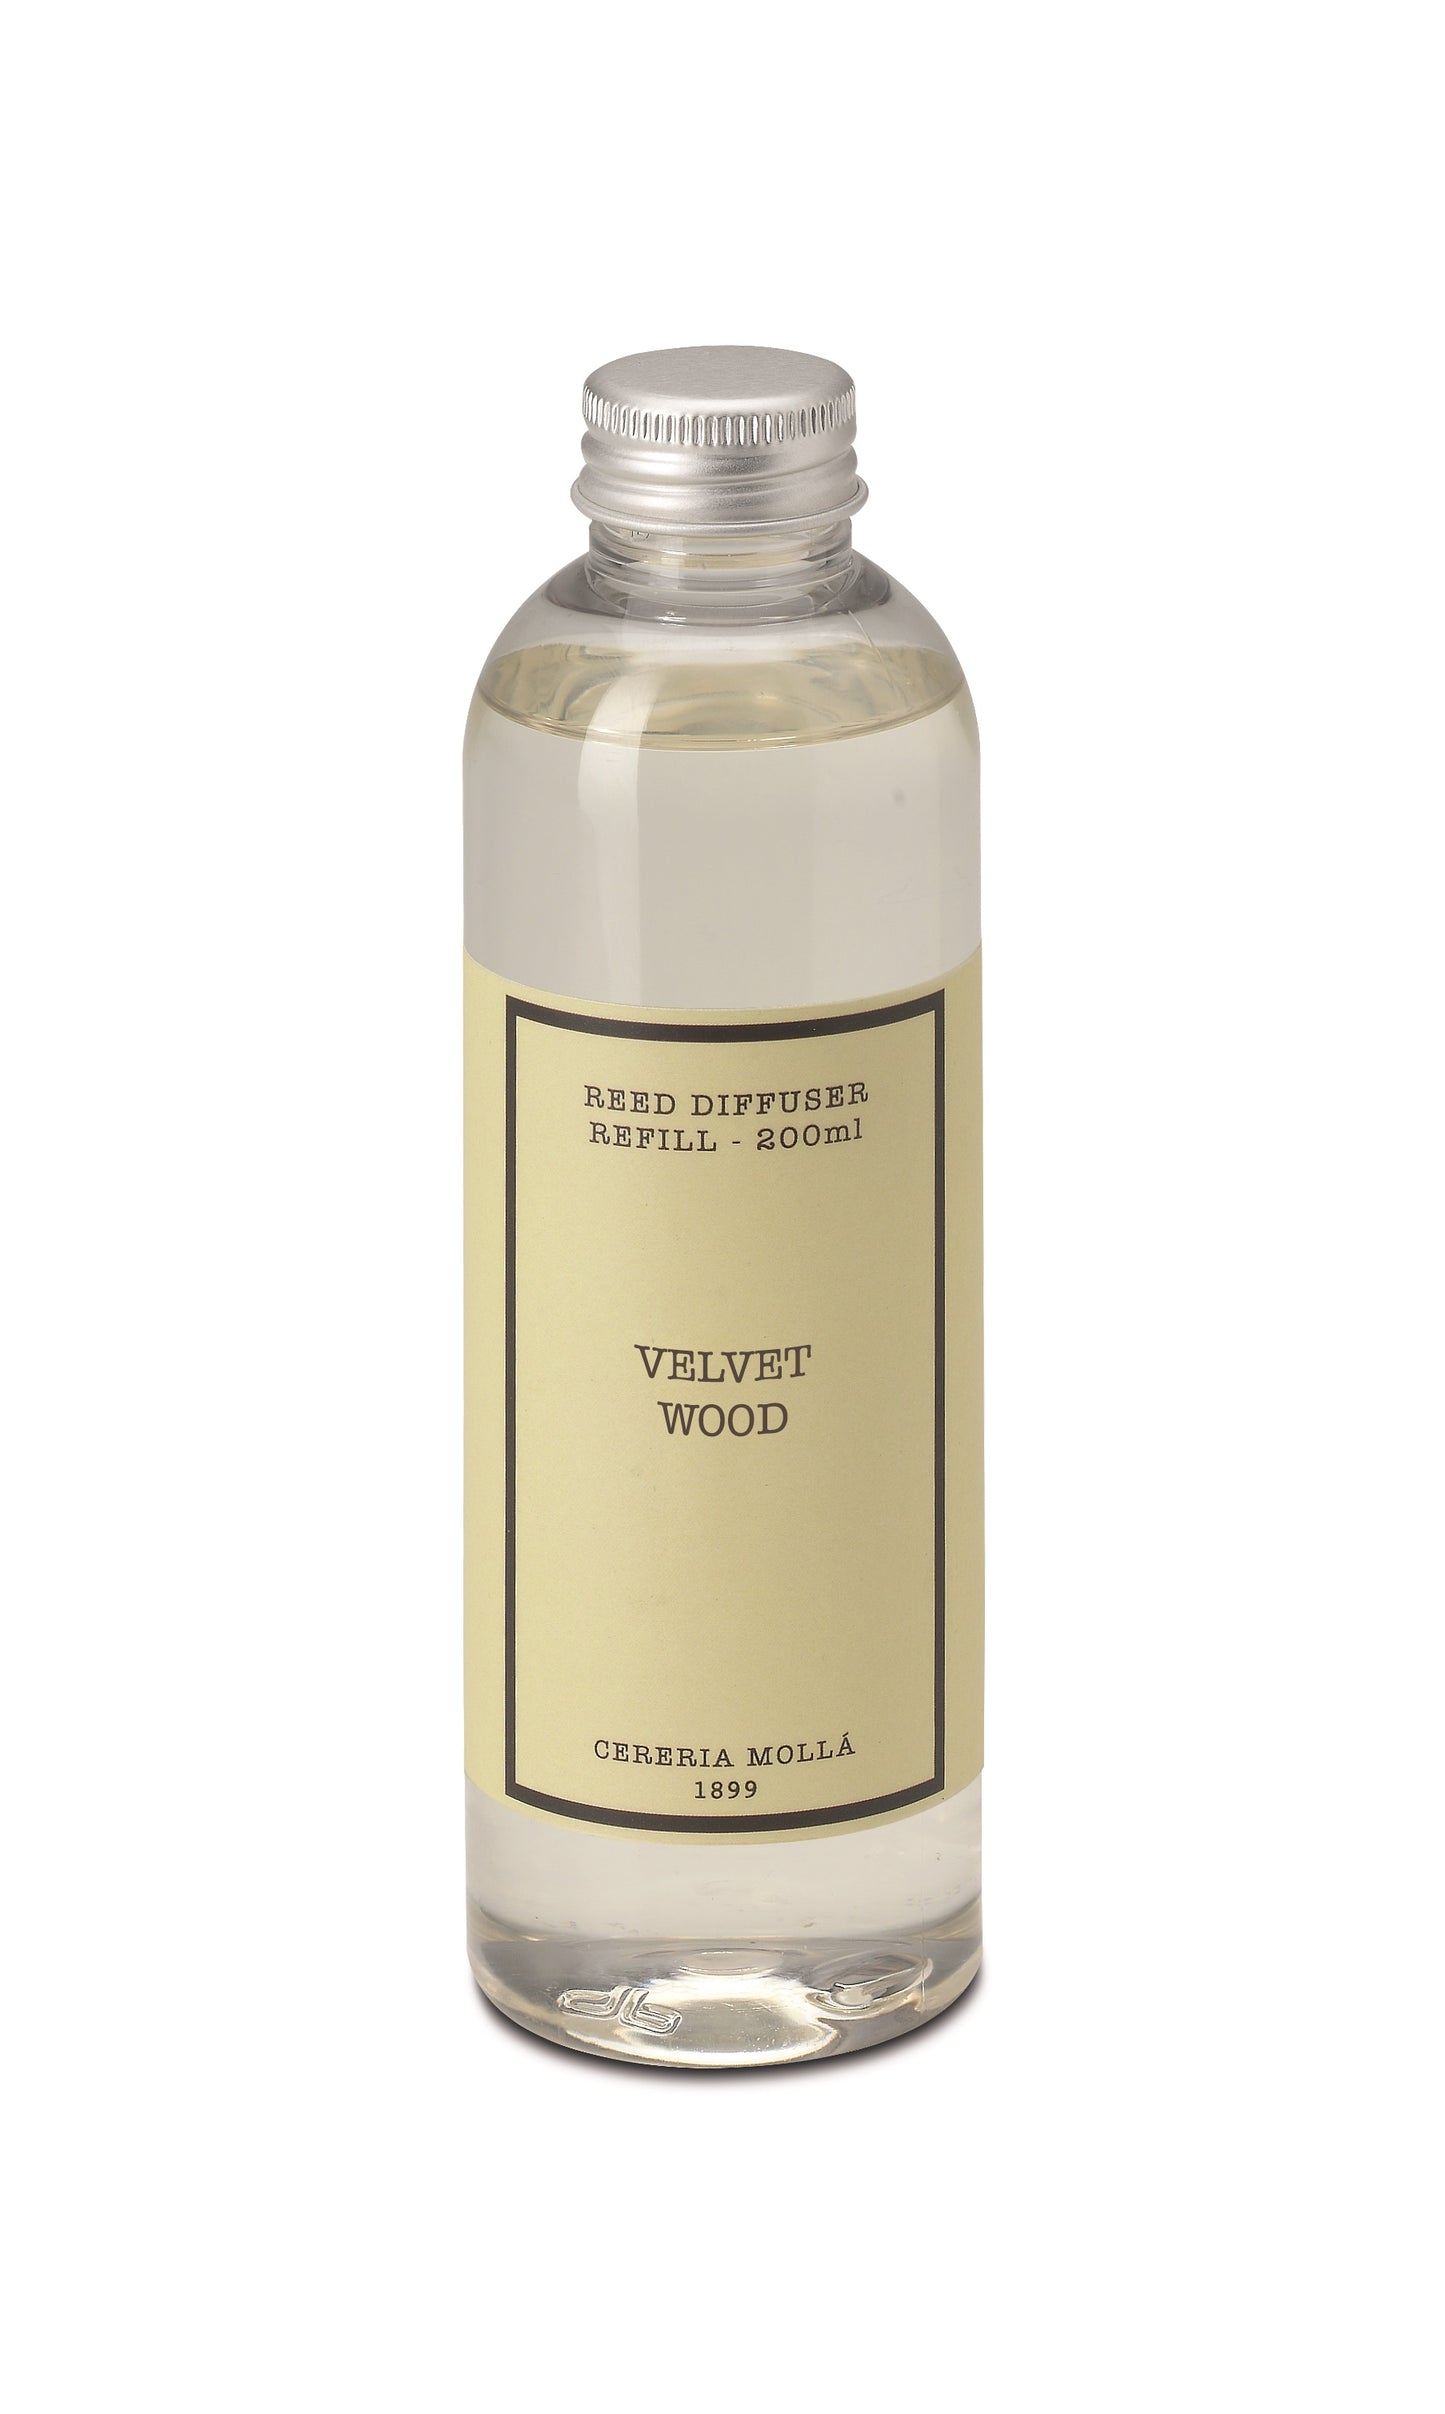 Velvet Wood Fragrance by Cereria Molla